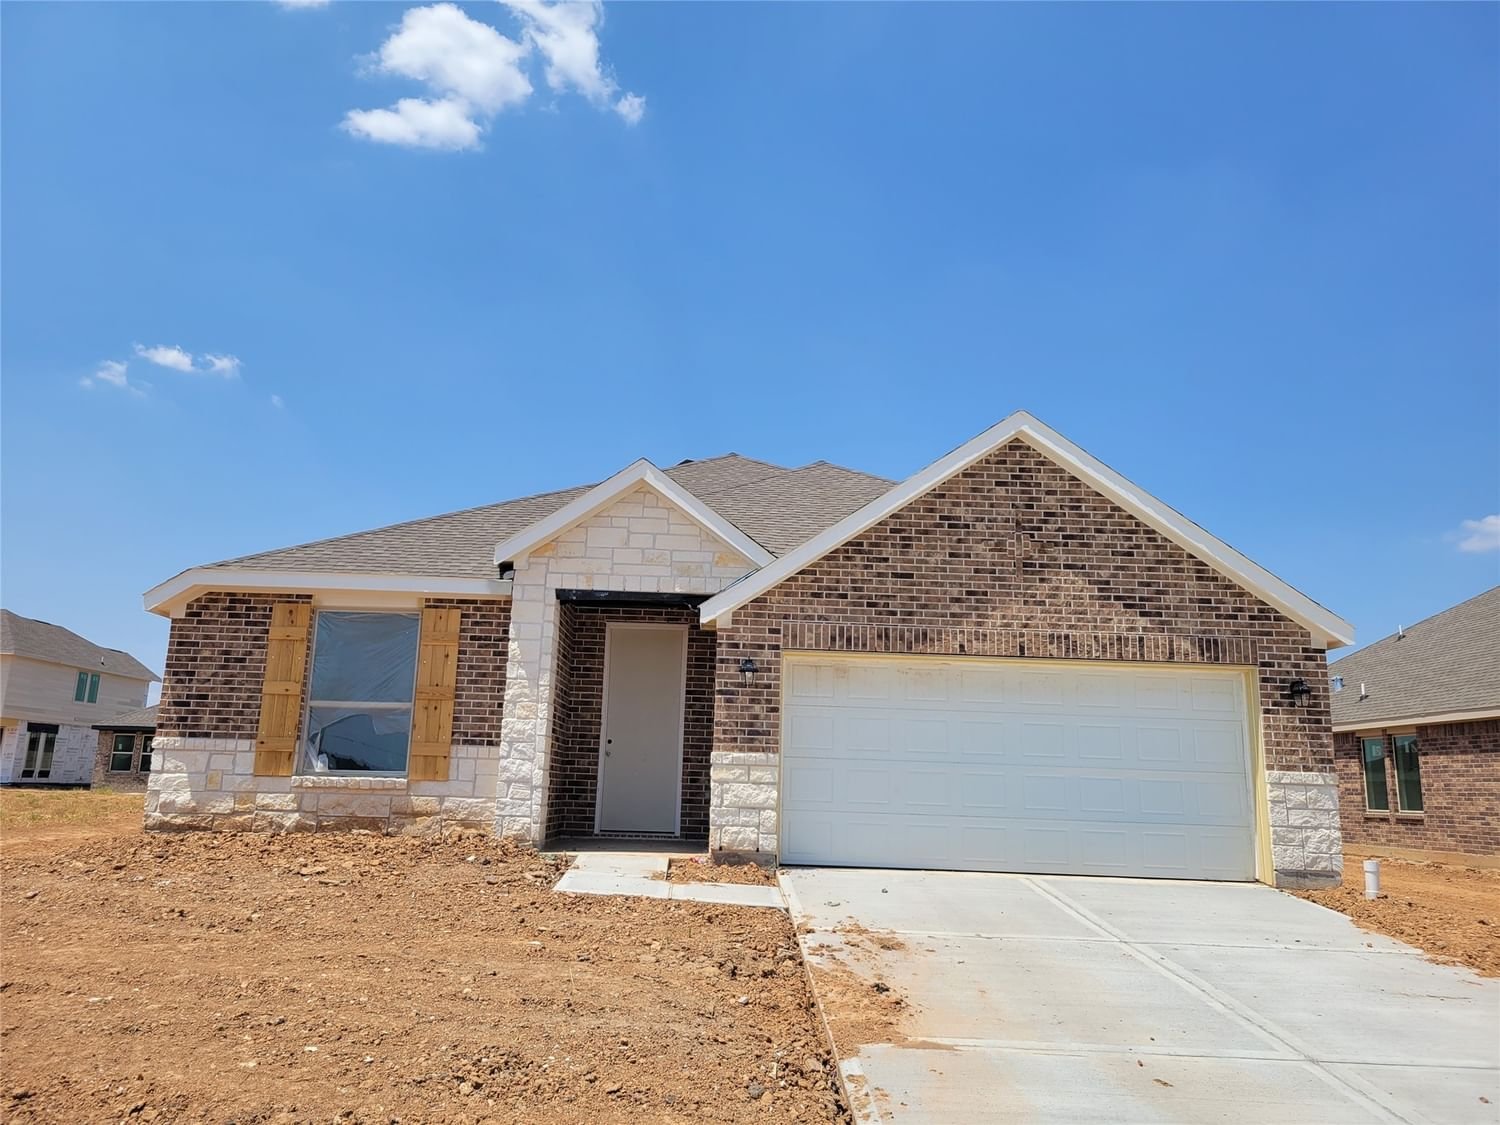 Real estate property located at 3014 Live Springs, Fort Bend, Miller's Pond, Rosenberg, TX, US